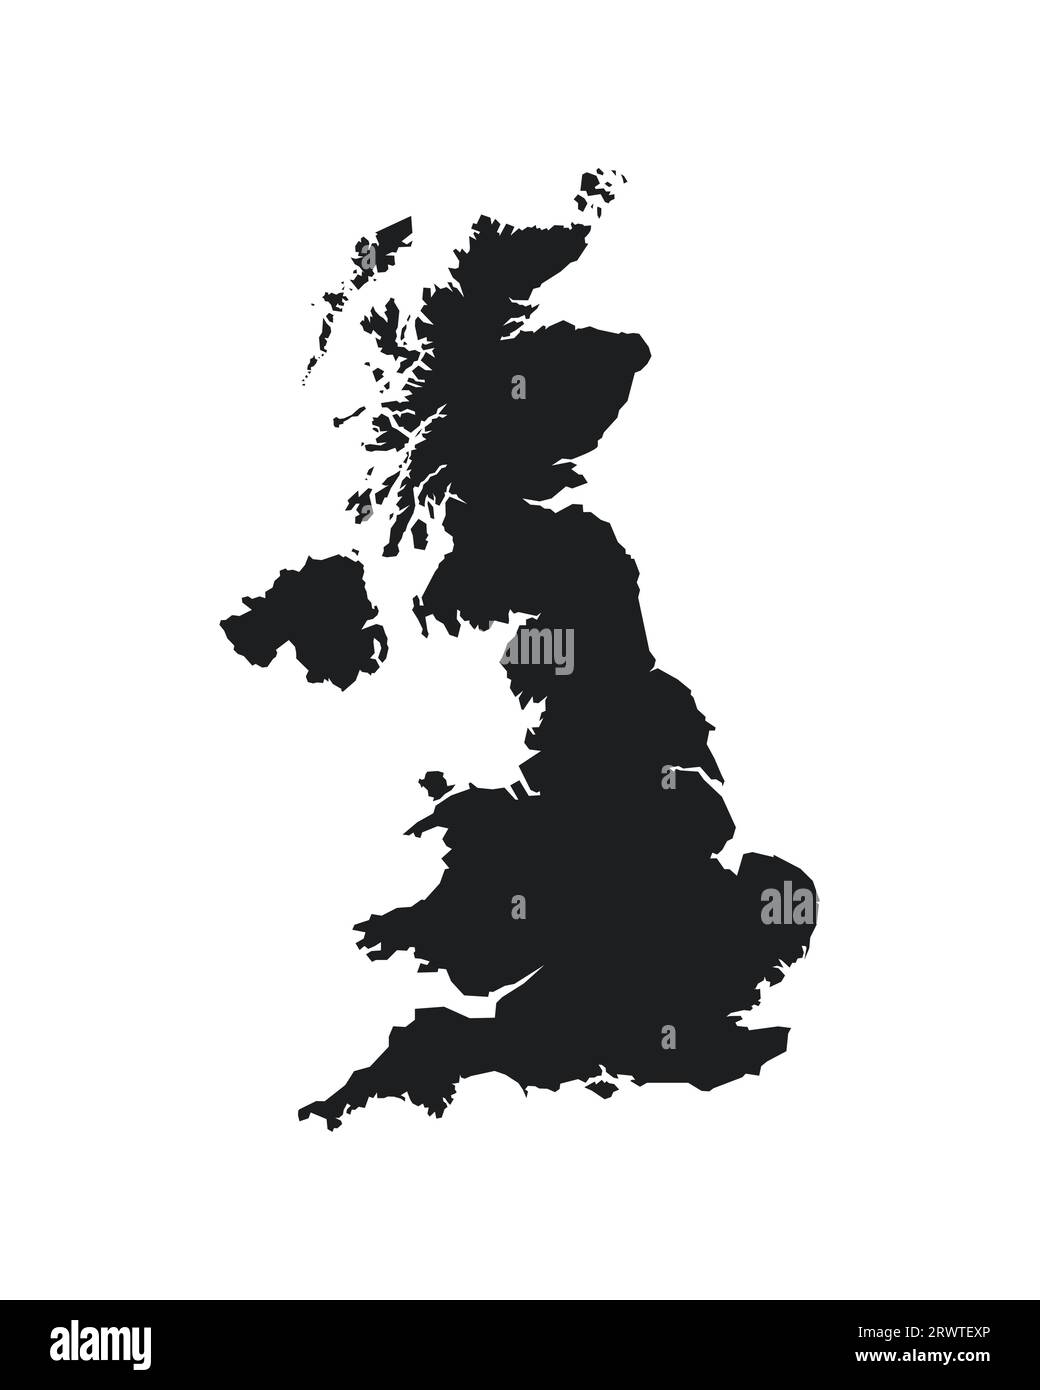 Vektor isolierte vereinfachte Illustration Symbol mit schwarzer Silhouette von Großbritannien und Nordirland (UK) Karte. Weißer Hintergrund Stock Vektor